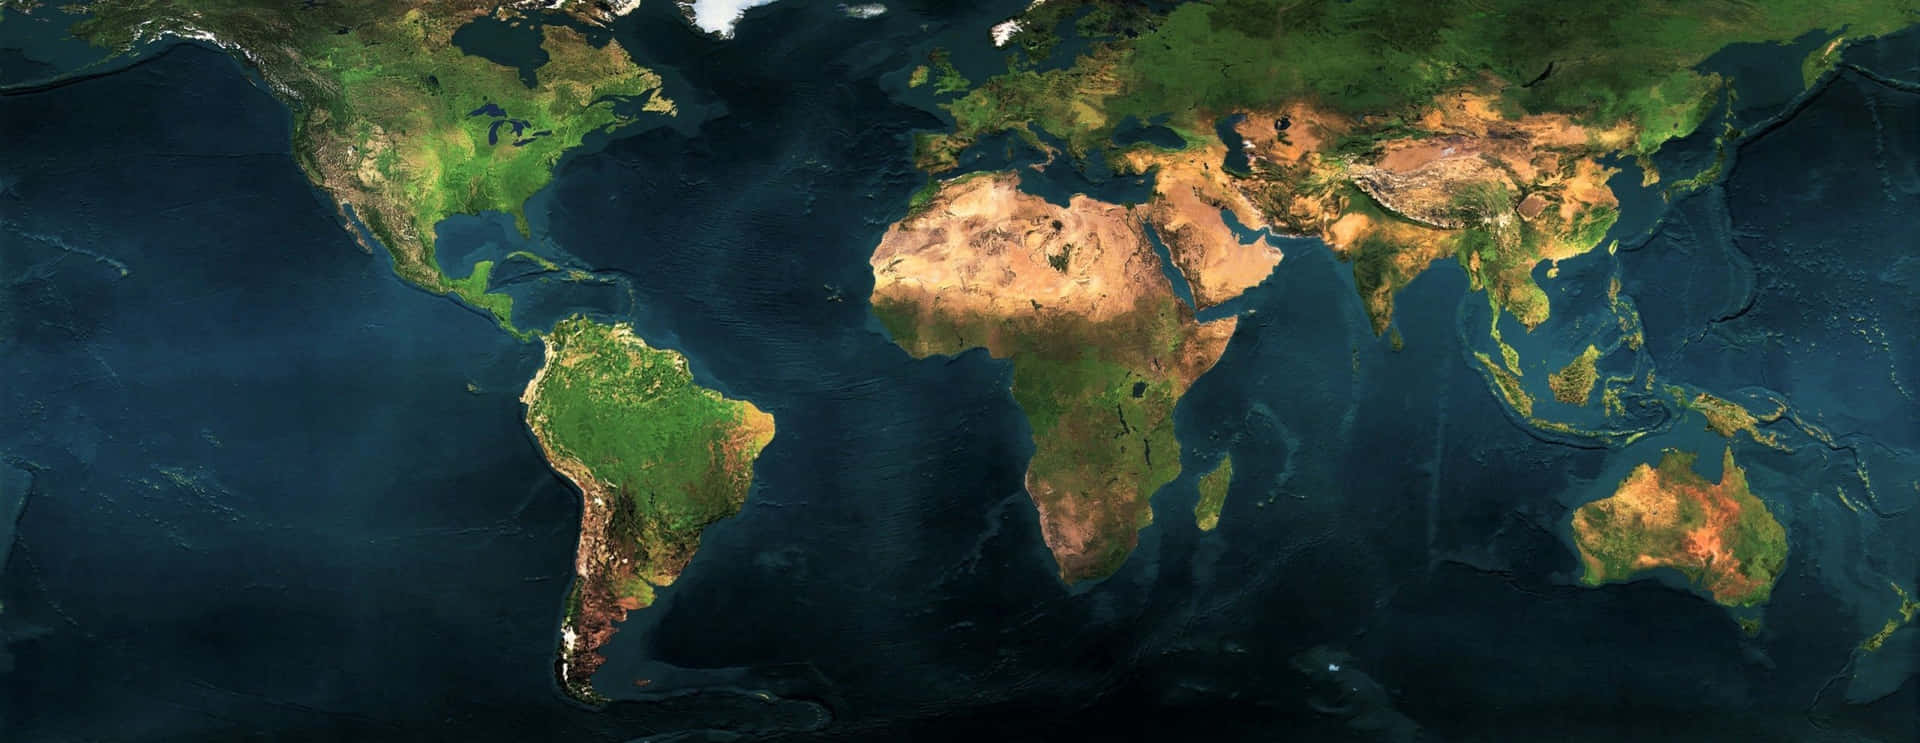 Etsatellitbillede Af Verden